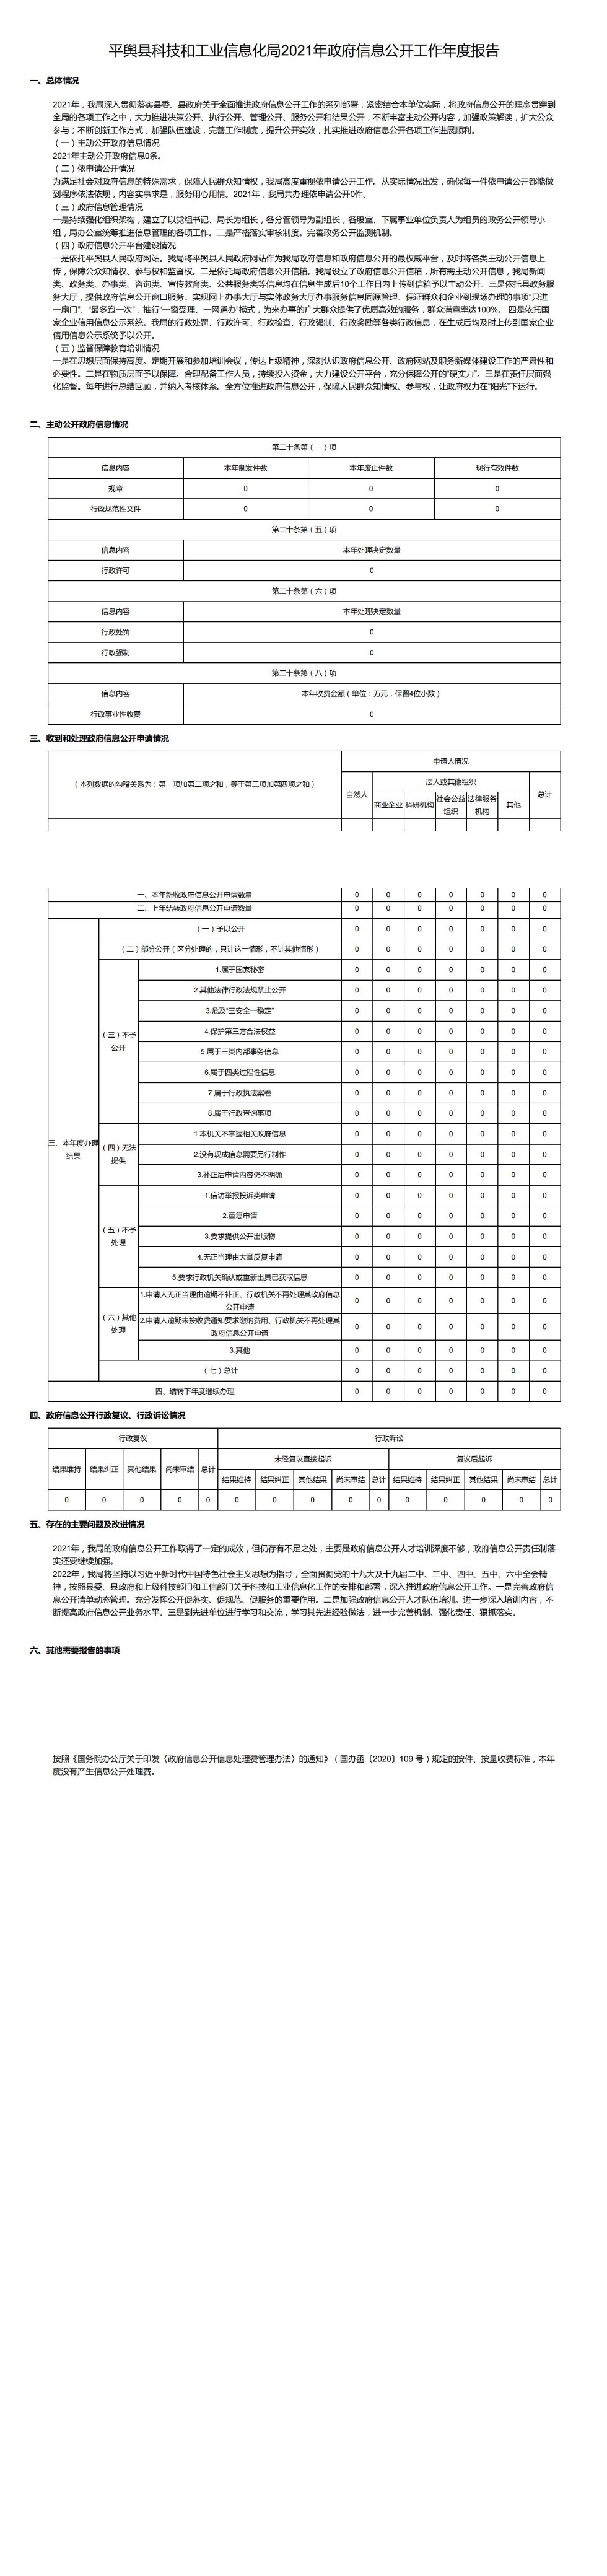 平舆县科技和工业信息化局2021年政府信息公开工作年度报告_00.jpg